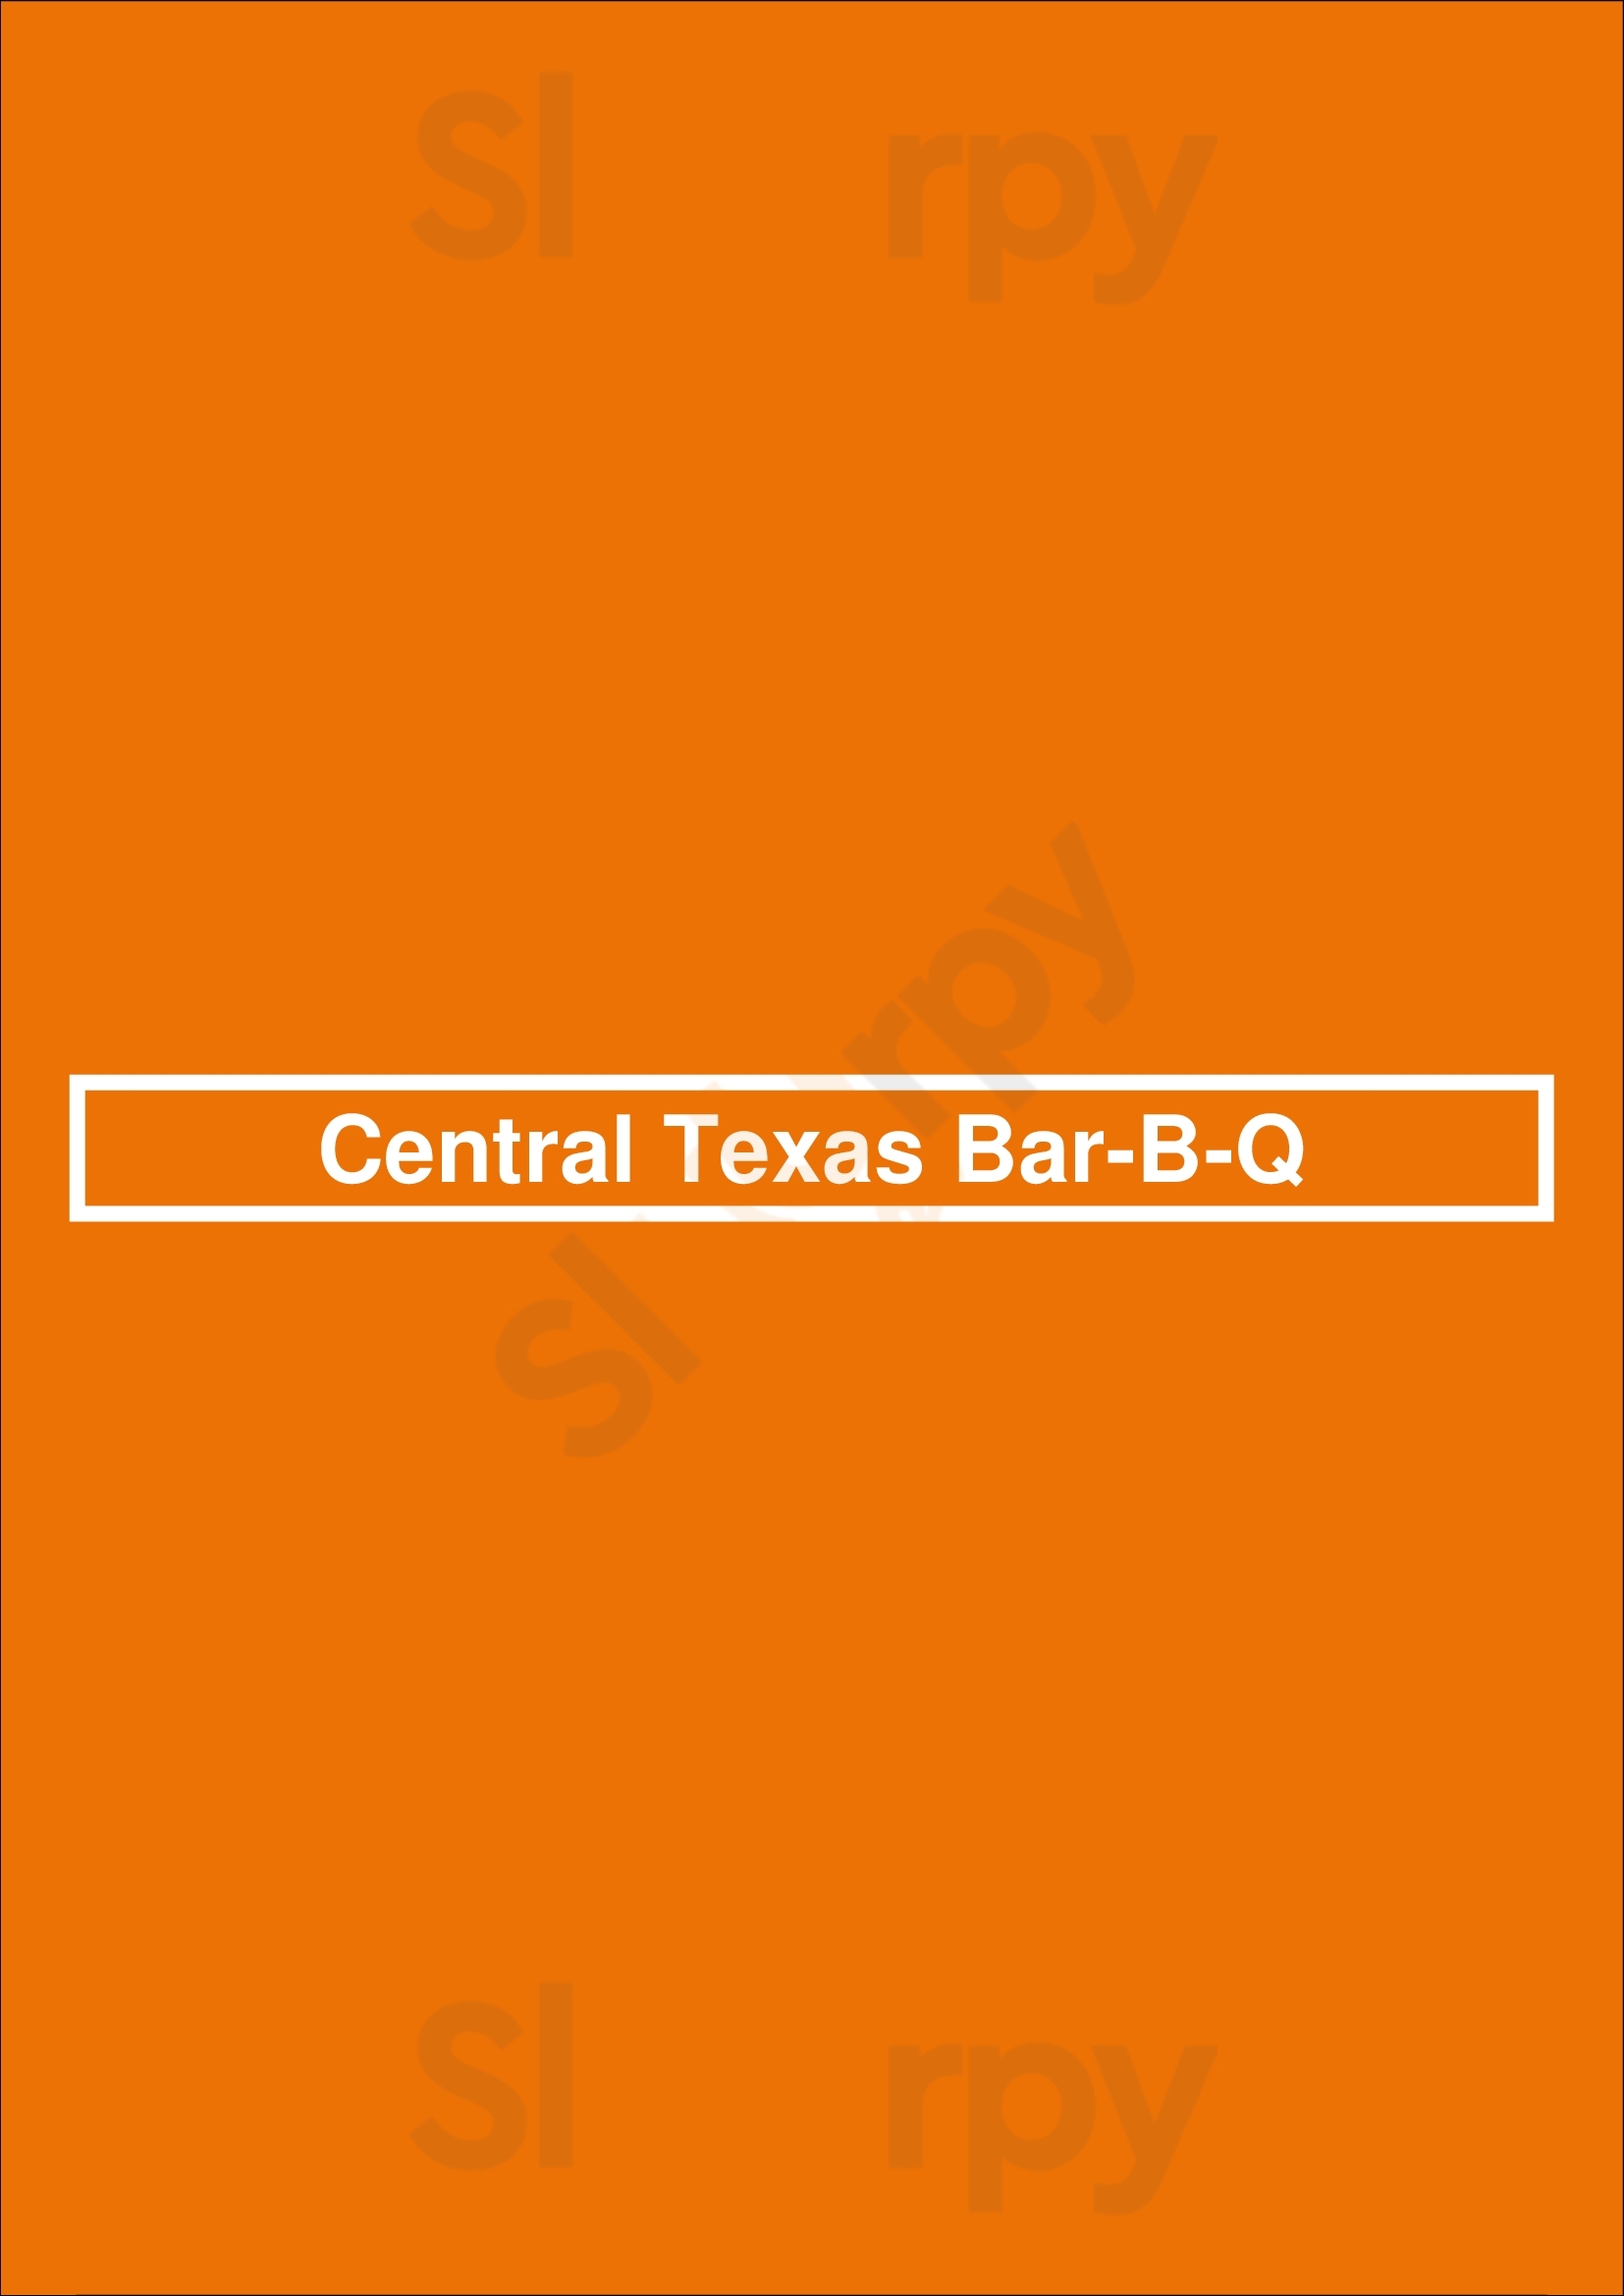 Central Texas Bar-b-q Houston Menu - 1